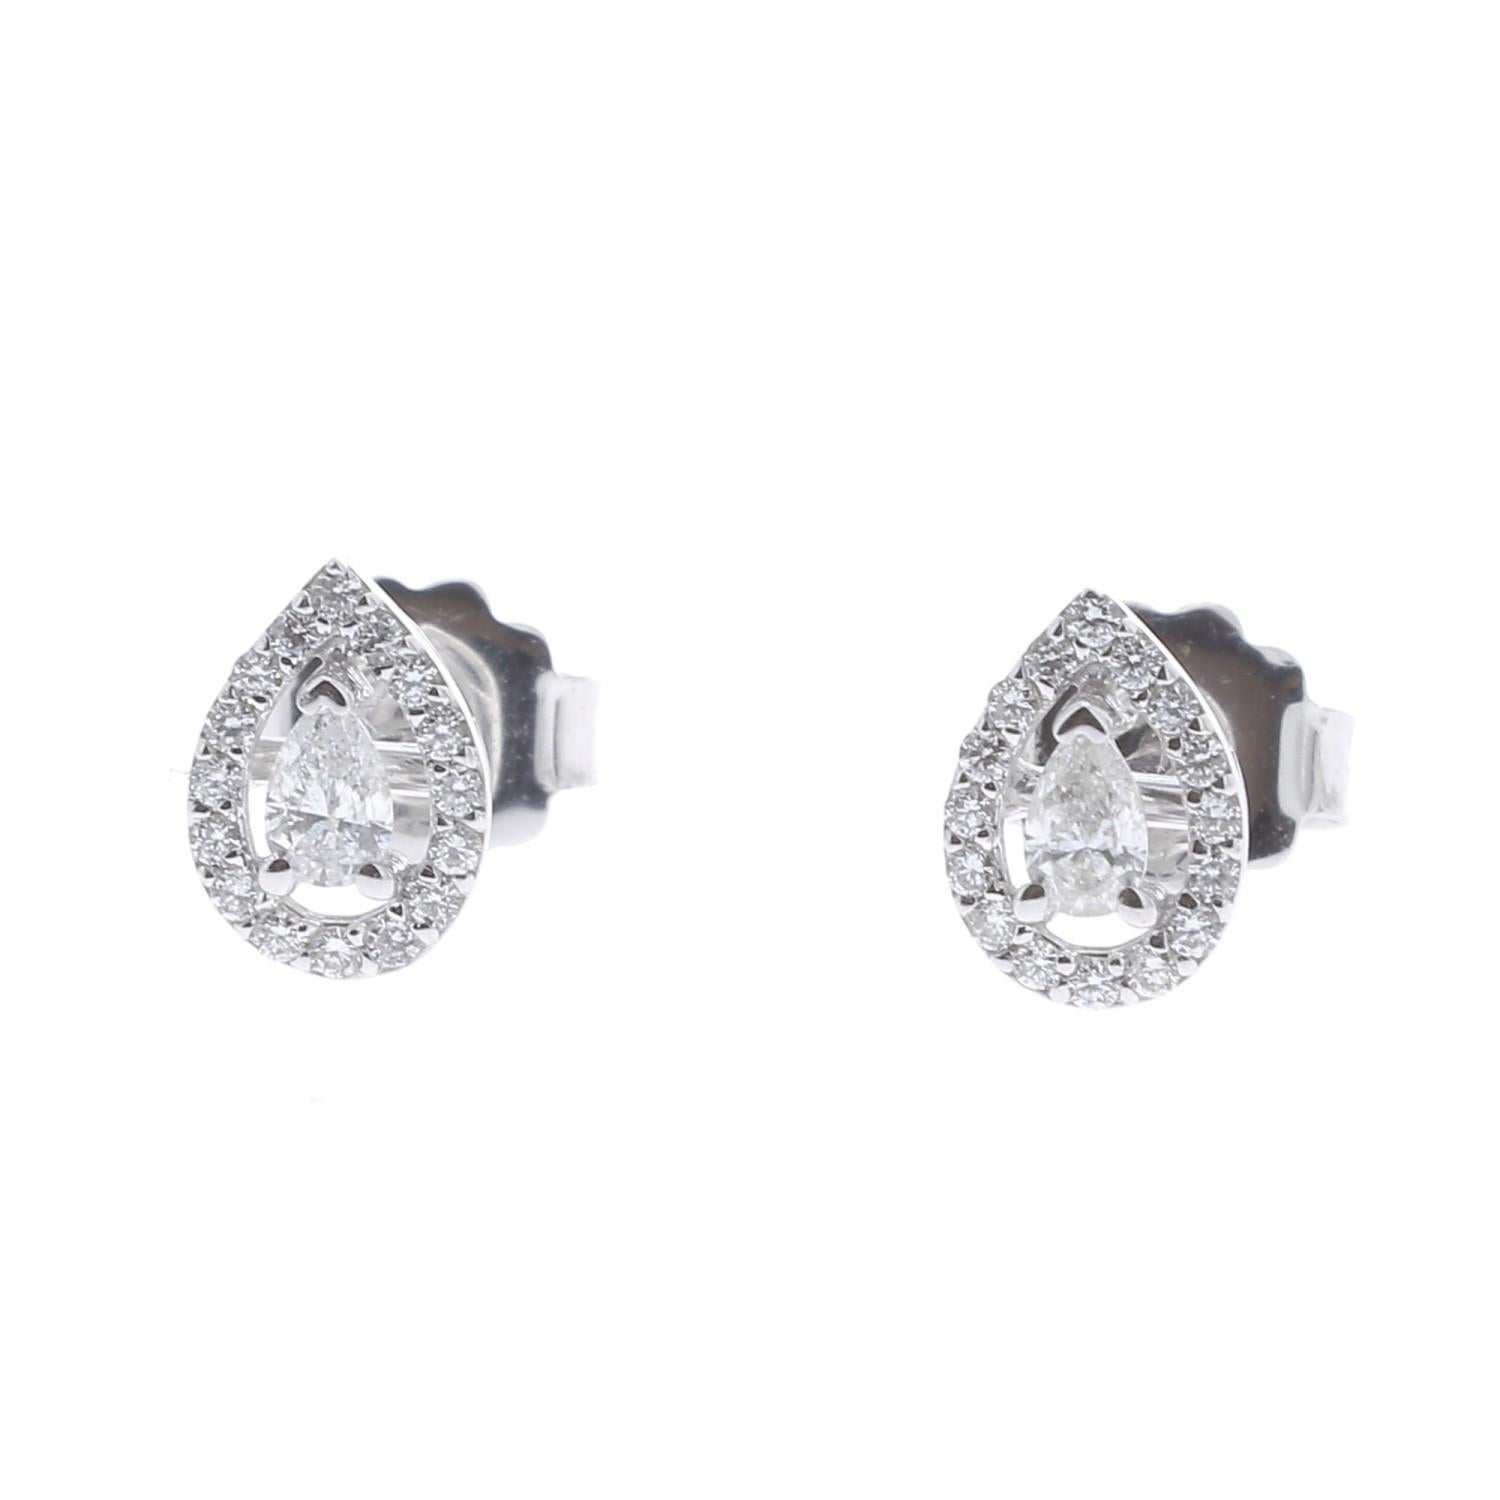 Ohrringe mit birnenförmigen Diamanten, besetzt mit einem Halo aus runden Diamanten mit einem Gewicht von 0,22 
karat, in dessen Zentrum ein Marquise-Diamant von 0,14 Karat steht.
Insgesamt wiegen diese Ohrringe 0,36 Karat.
Die Diamanten sind